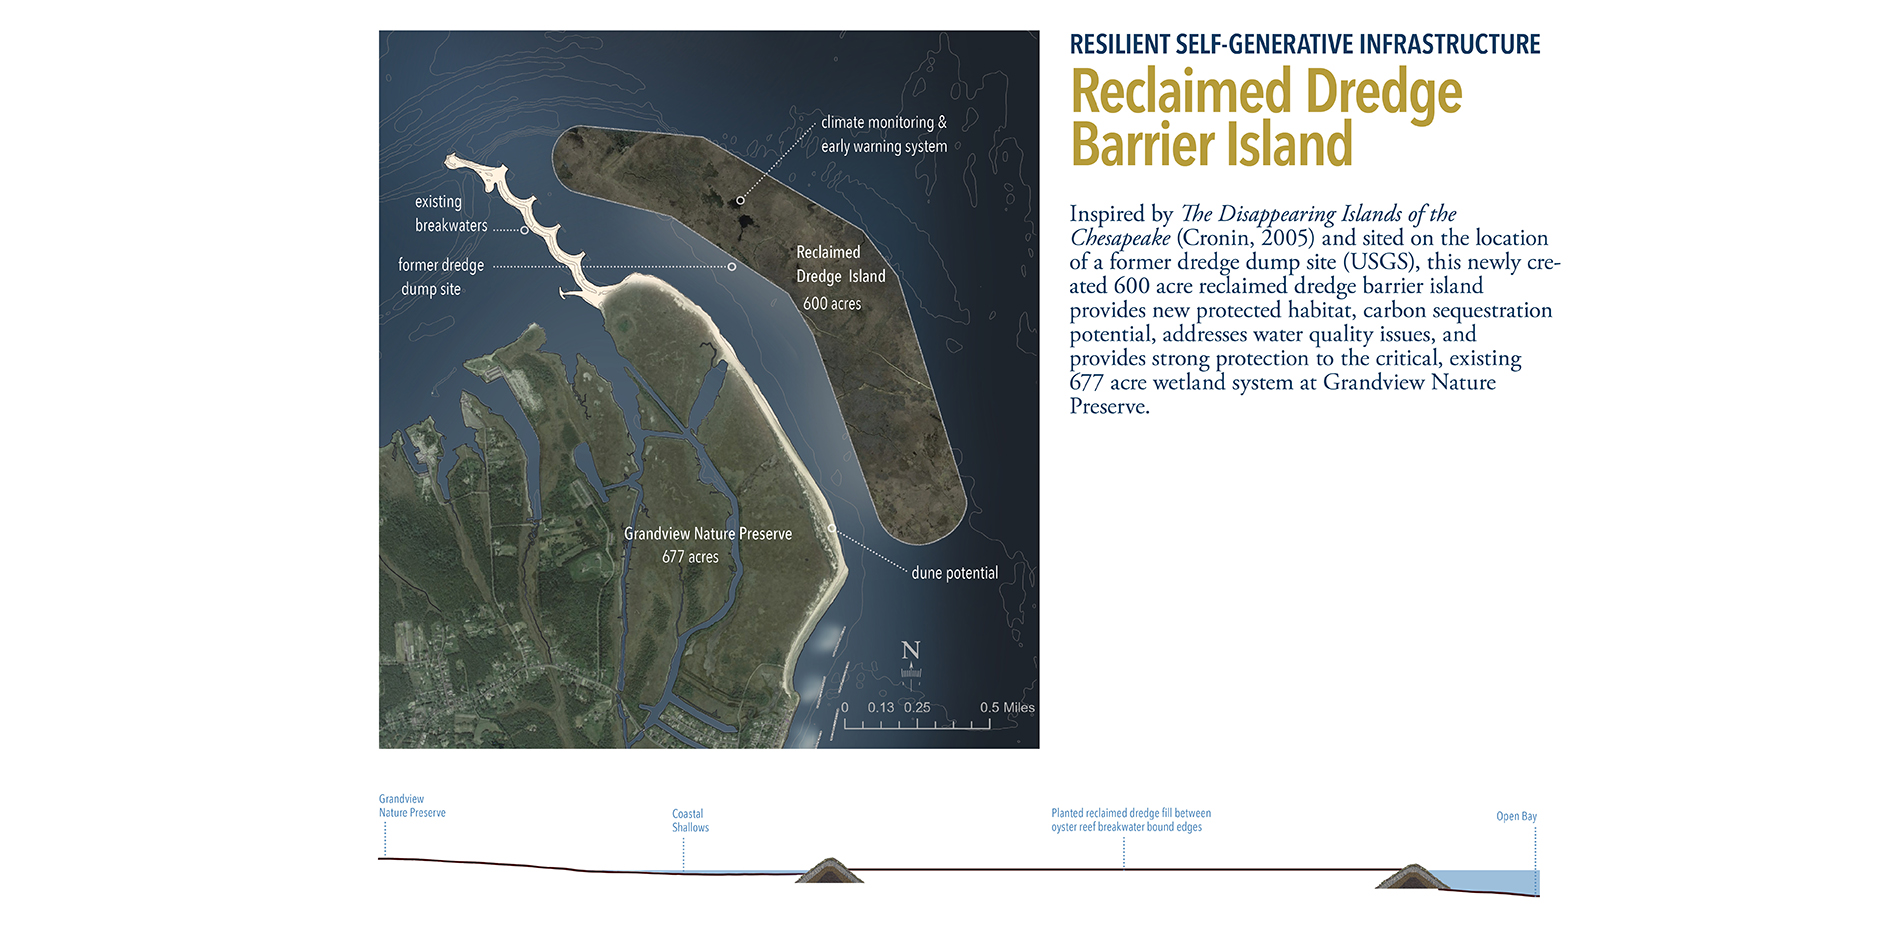 Reclaimed Dredge Barrier Island